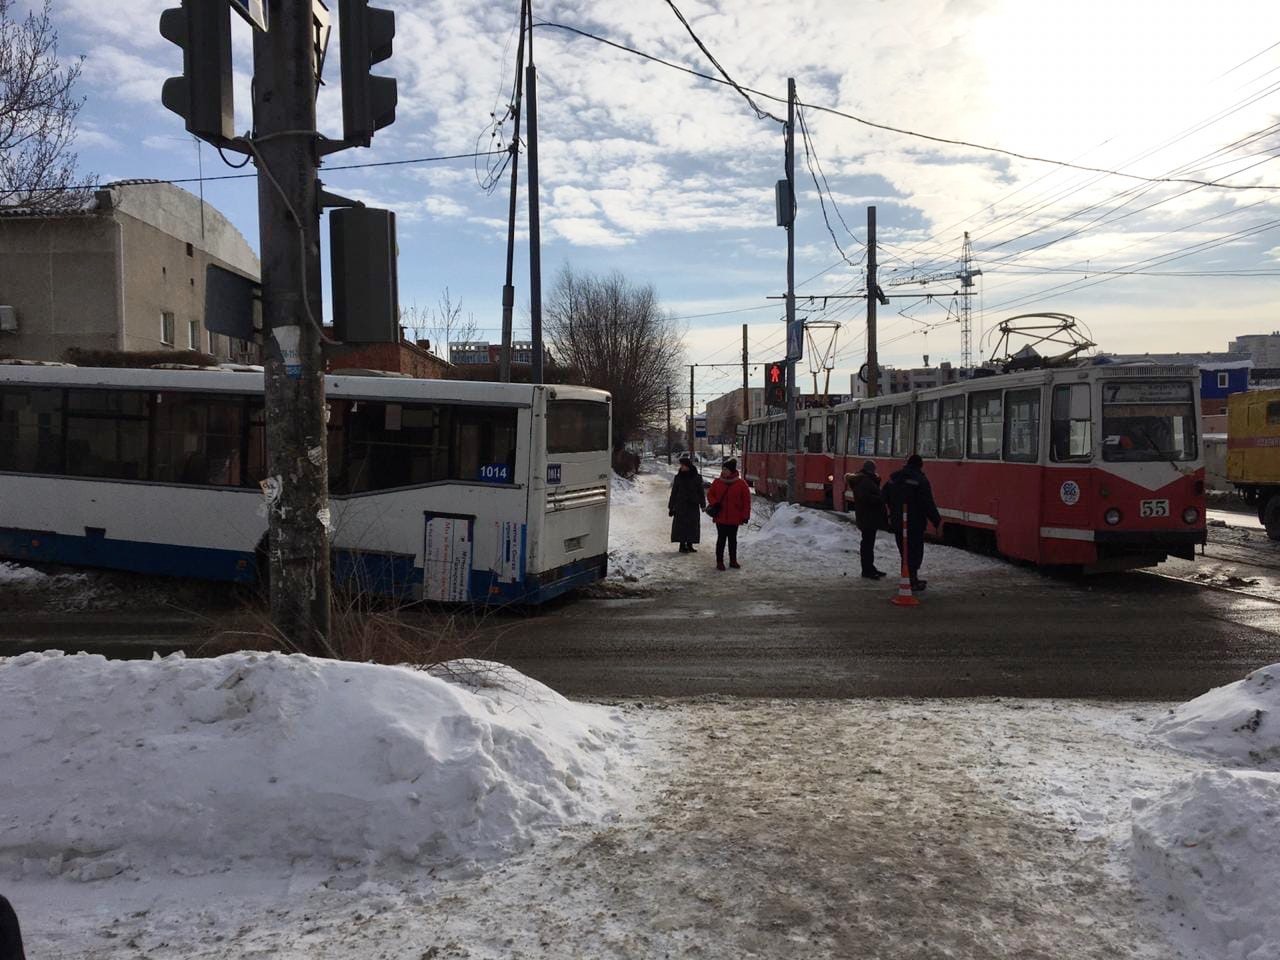 Ространснадзор начал проверку после ДТП с автобусом и трамваем в Омске #Омск #Общество #Сегодня